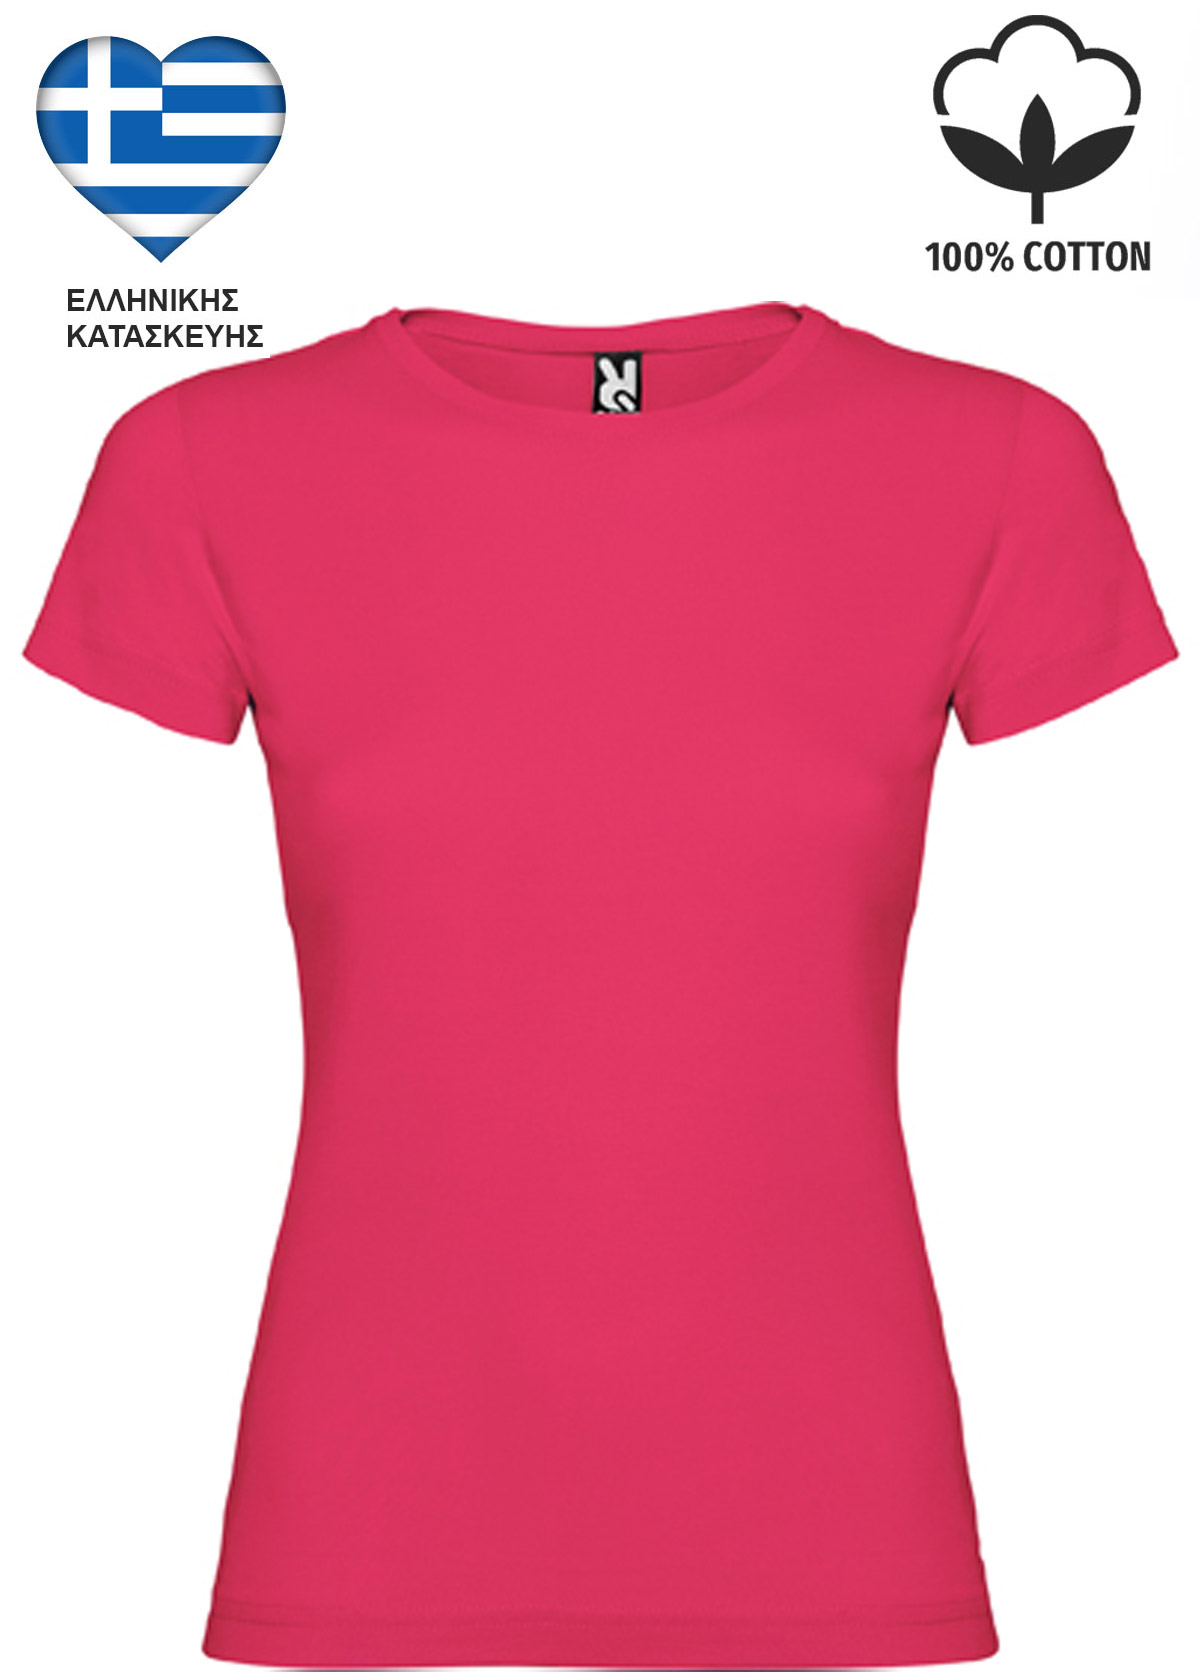 Φούξια Γυναικείο Βαμβακερό T-Shirt Ελληνικής Κατασκευής 6627